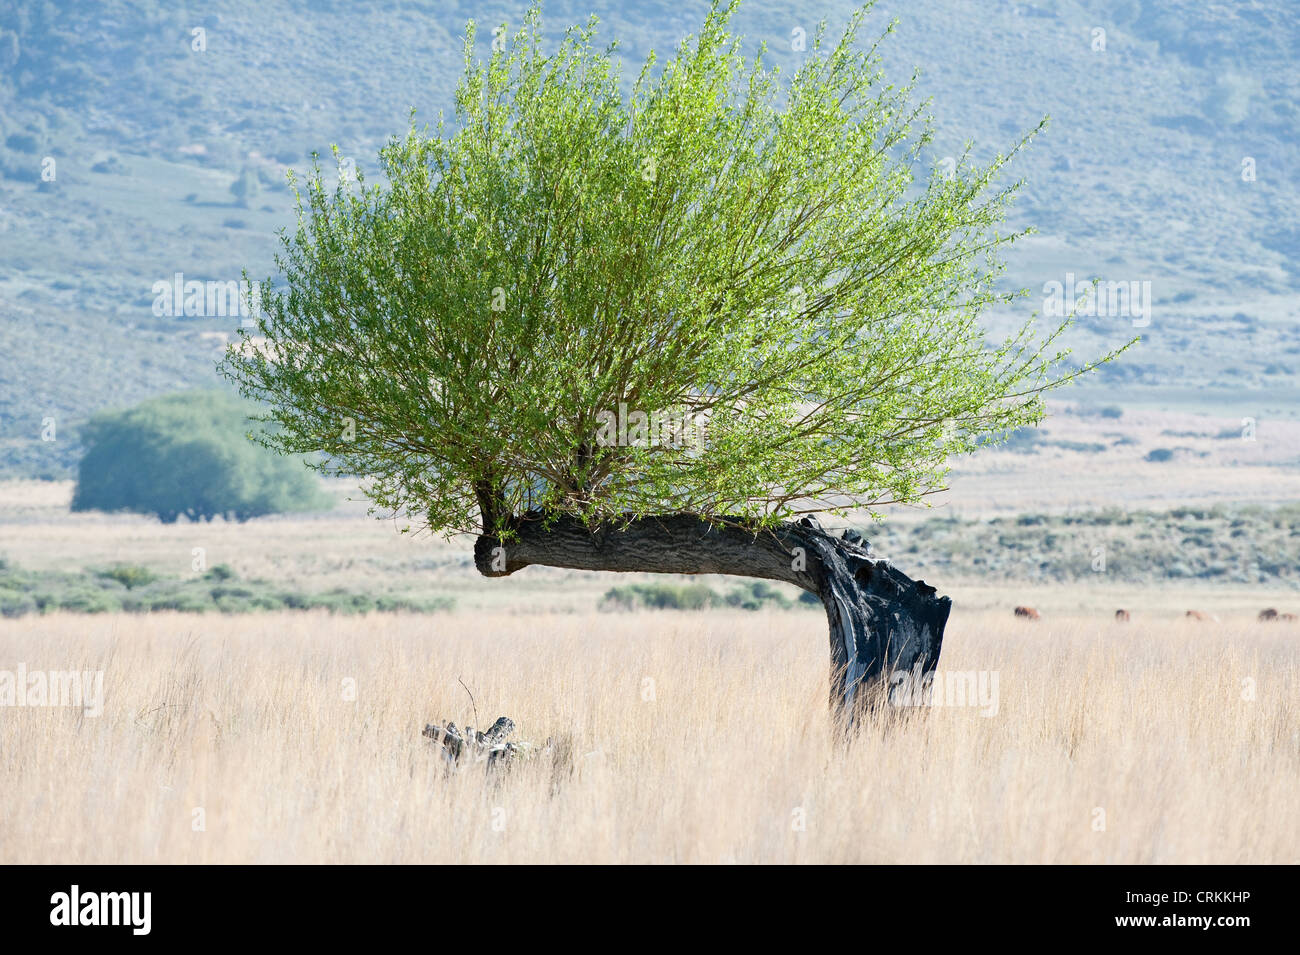 Weidenbaum sind gepflanzt, um Erosion zu verhindern, bieten Holz und Schutz für Tiere Ruta 40 südlich von Zapala Neuquén Argentinien Stockfoto